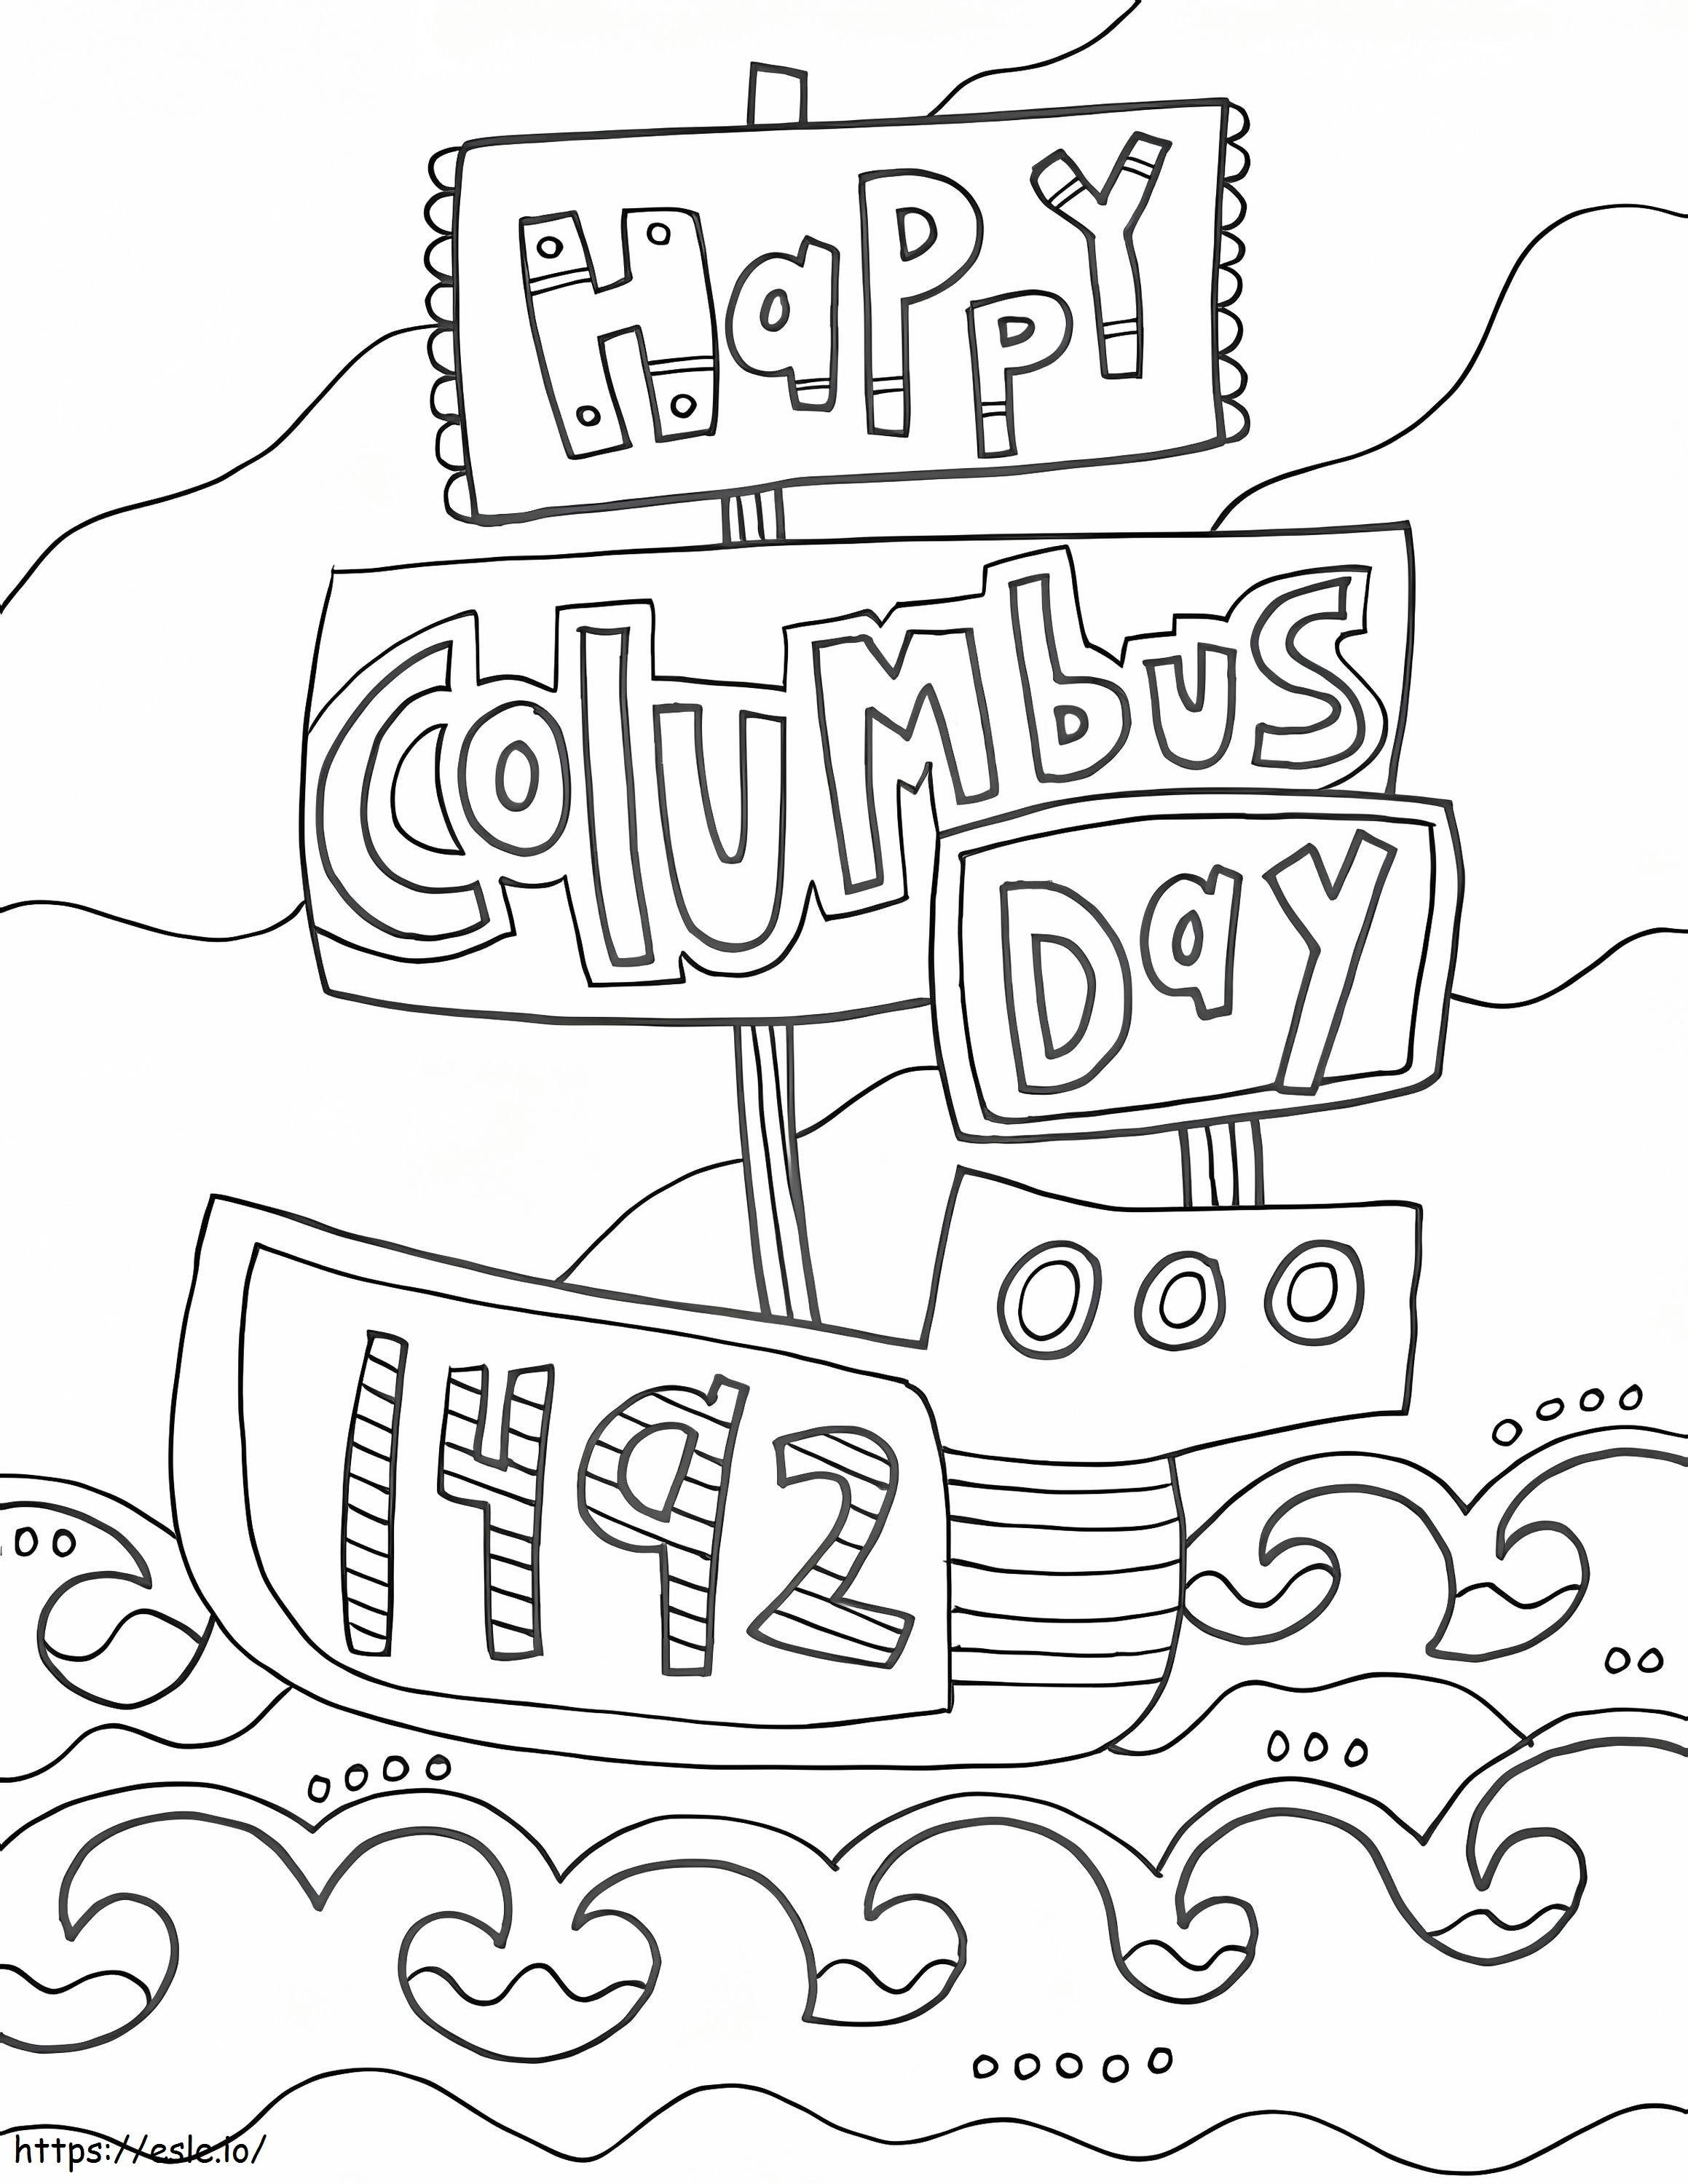 Mutlu Kolomb Günü 1 boyama